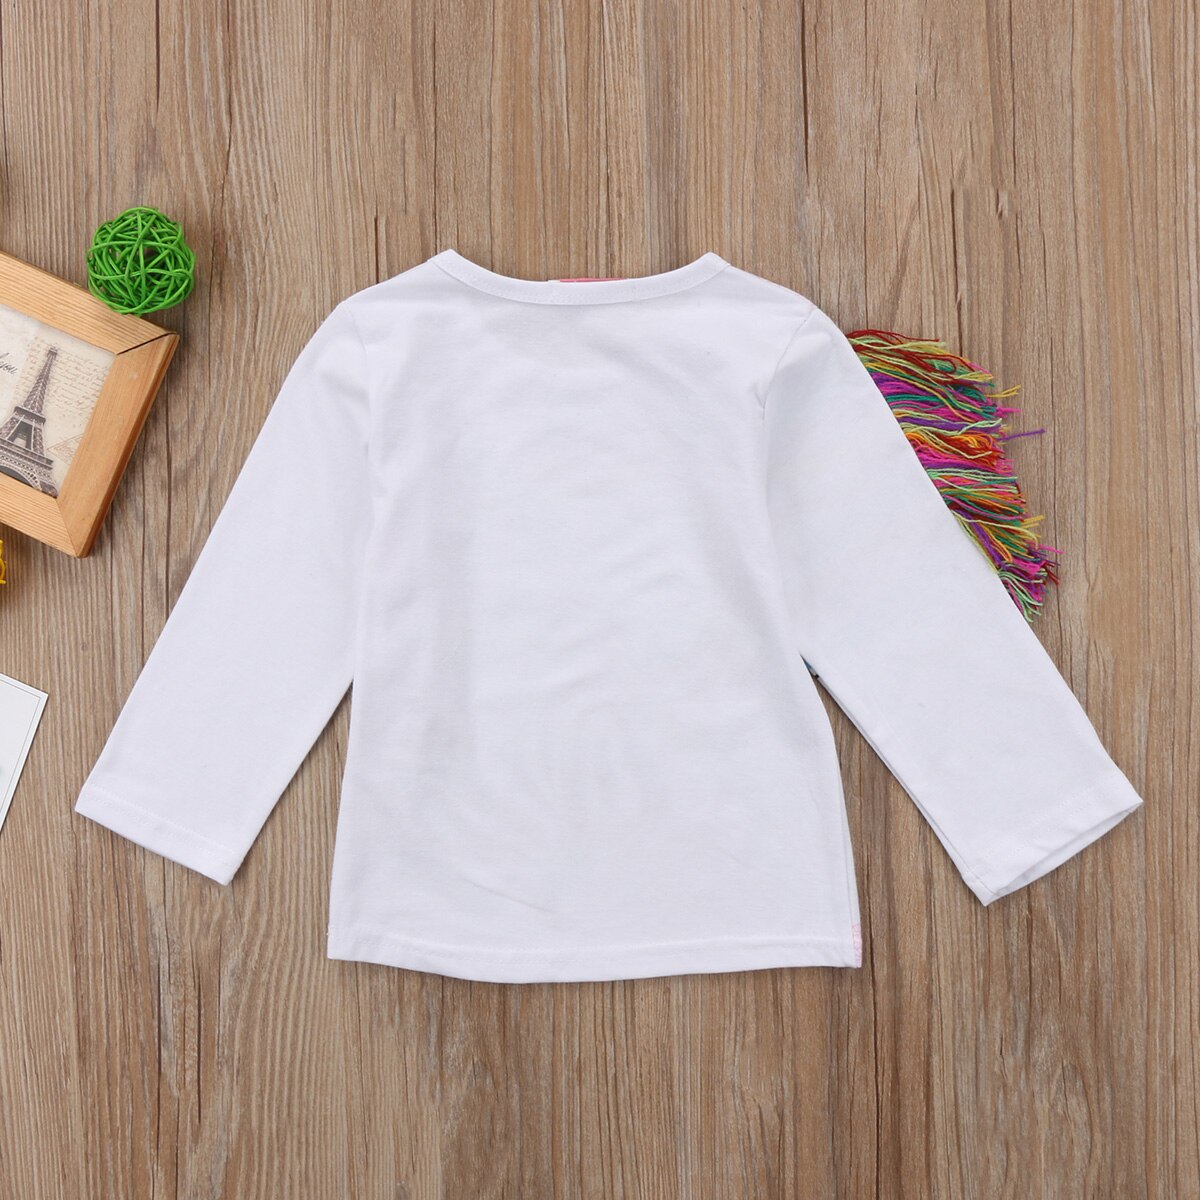 Toddler børn piger enhjørning langærmet sommer toppe t-shirt tøj